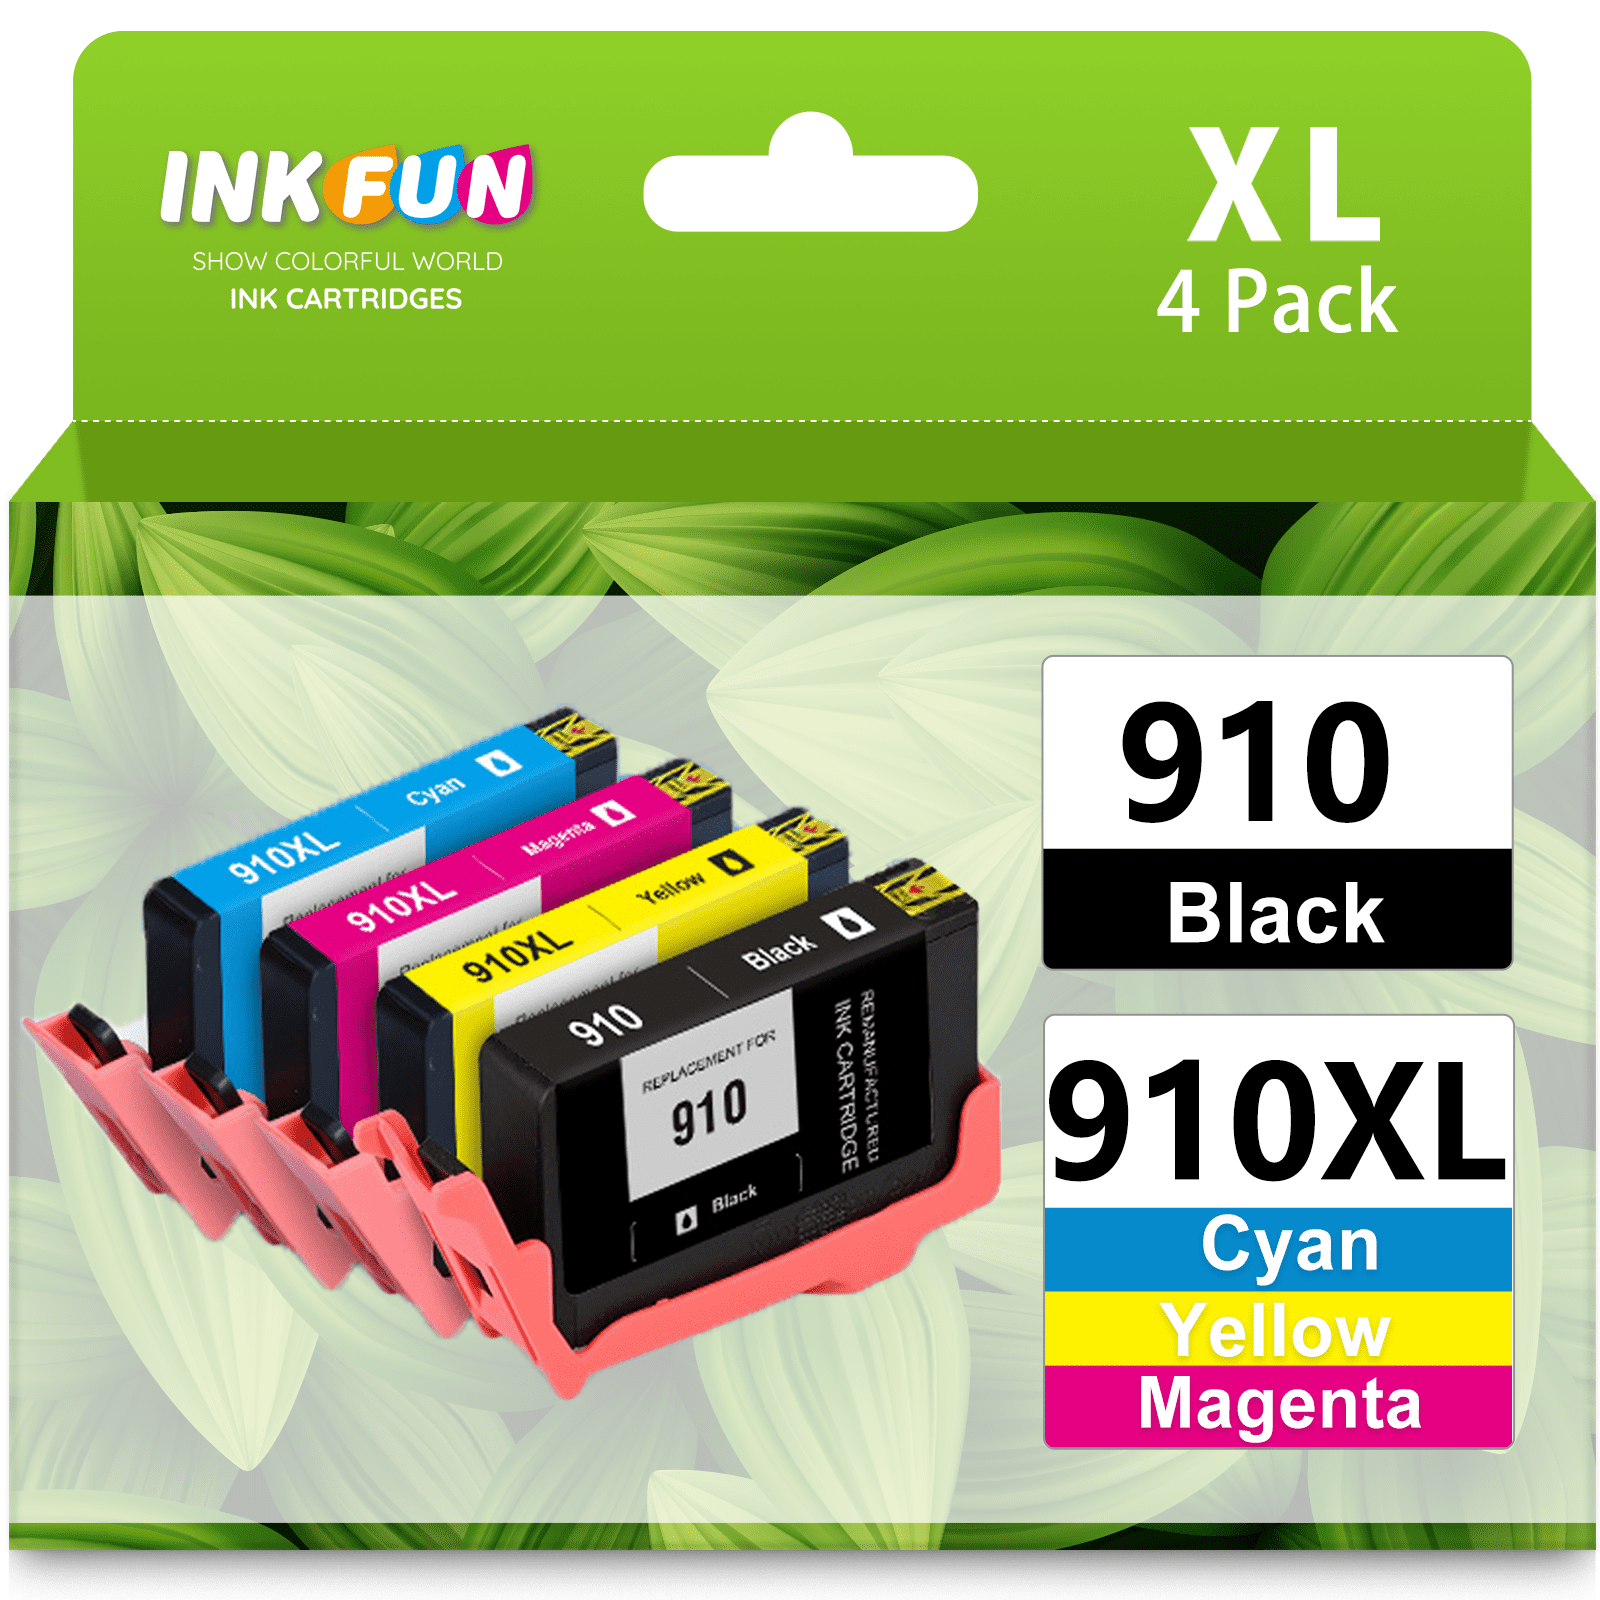 910XL Black Ink Cartridge for HP OfficeJet Pro 8020 8022 8025 8028 8030  8035